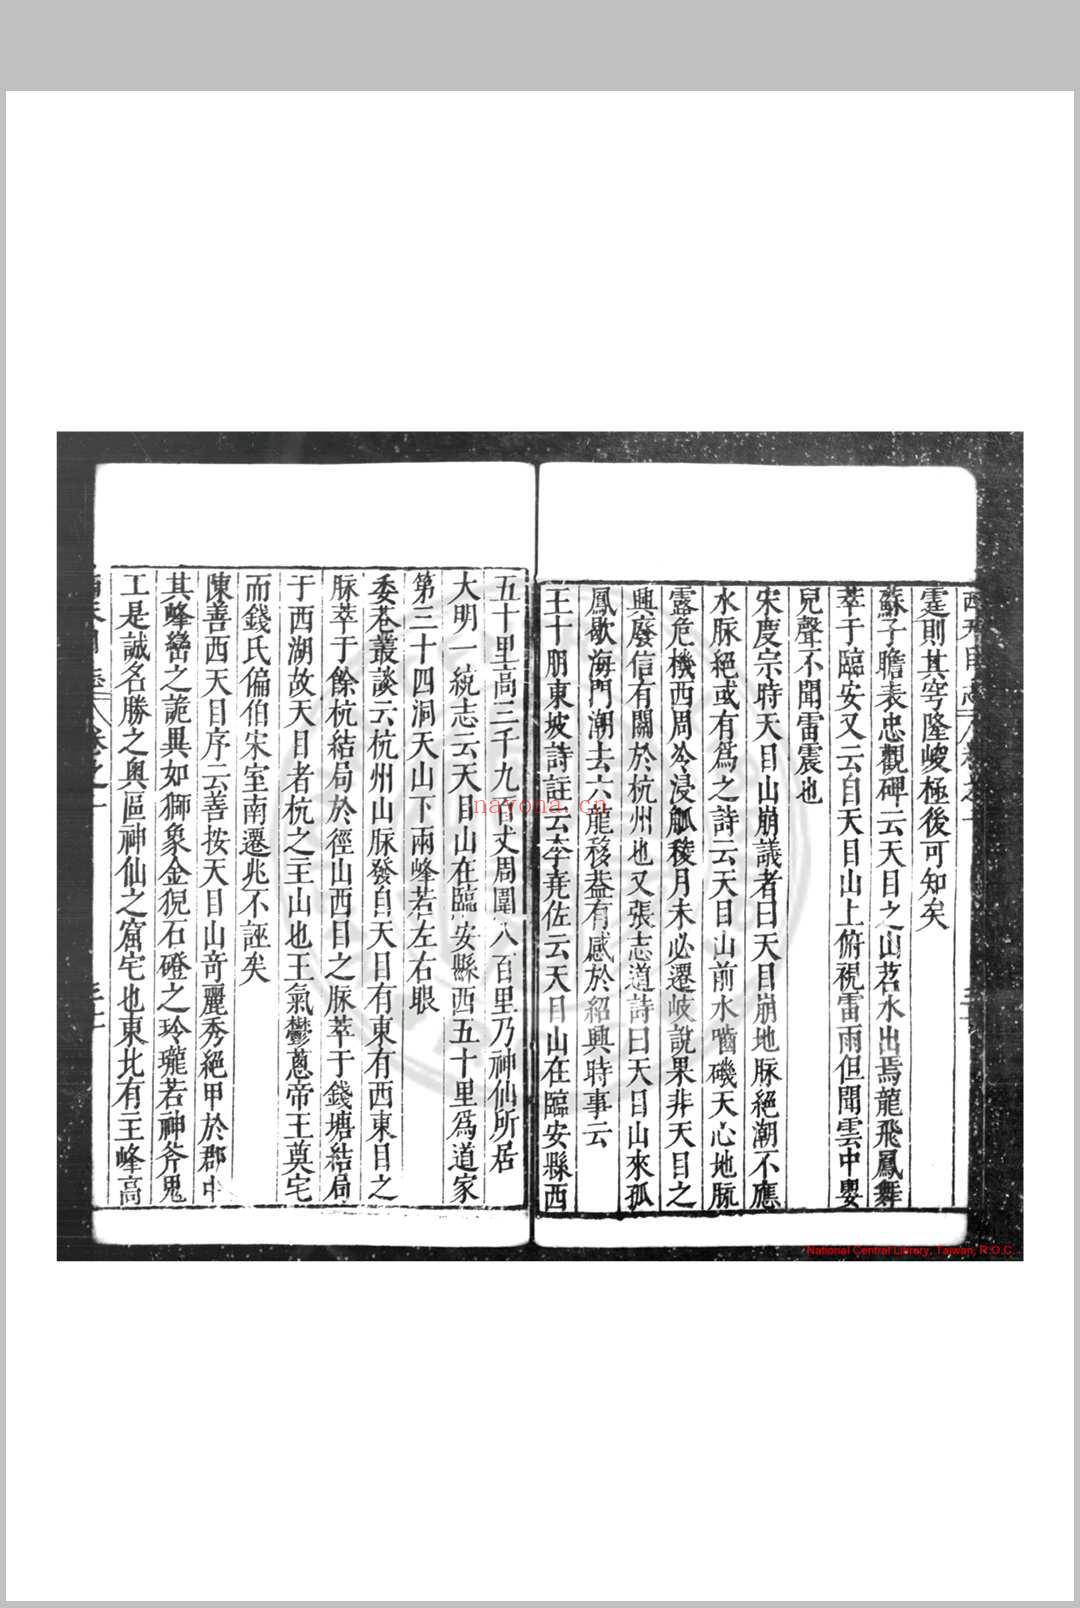 三修西天目志 (明)孙昌裔撰 明天启元年(1621)刊本